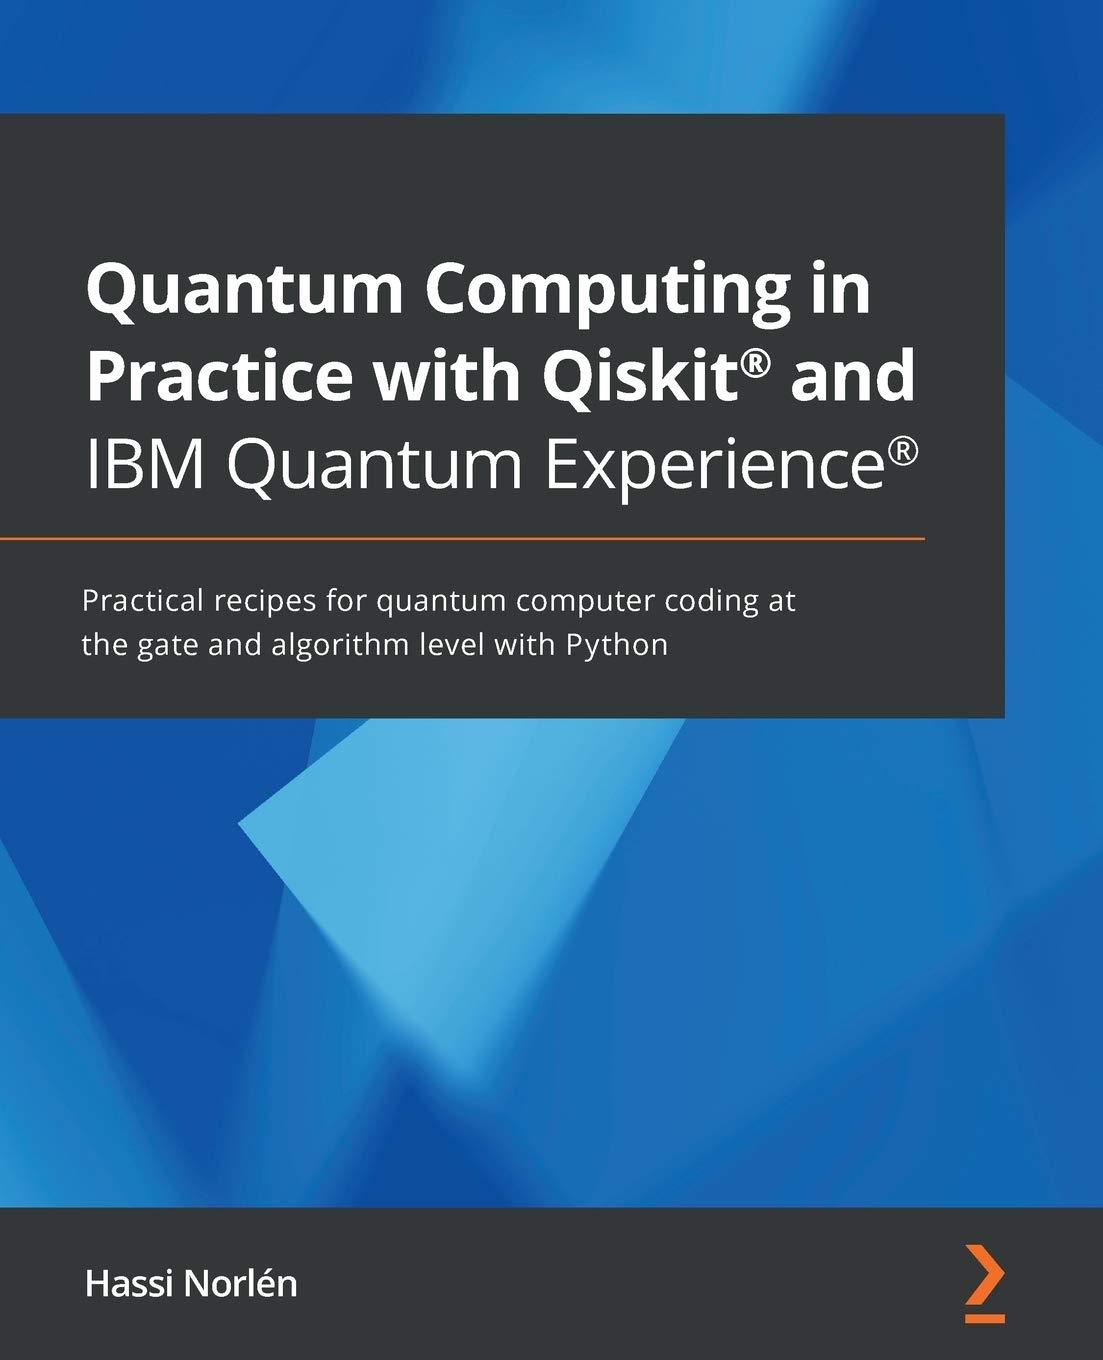 quantum computing in practice with qiskit® and ibm quantum experience® practical recipes for quantum